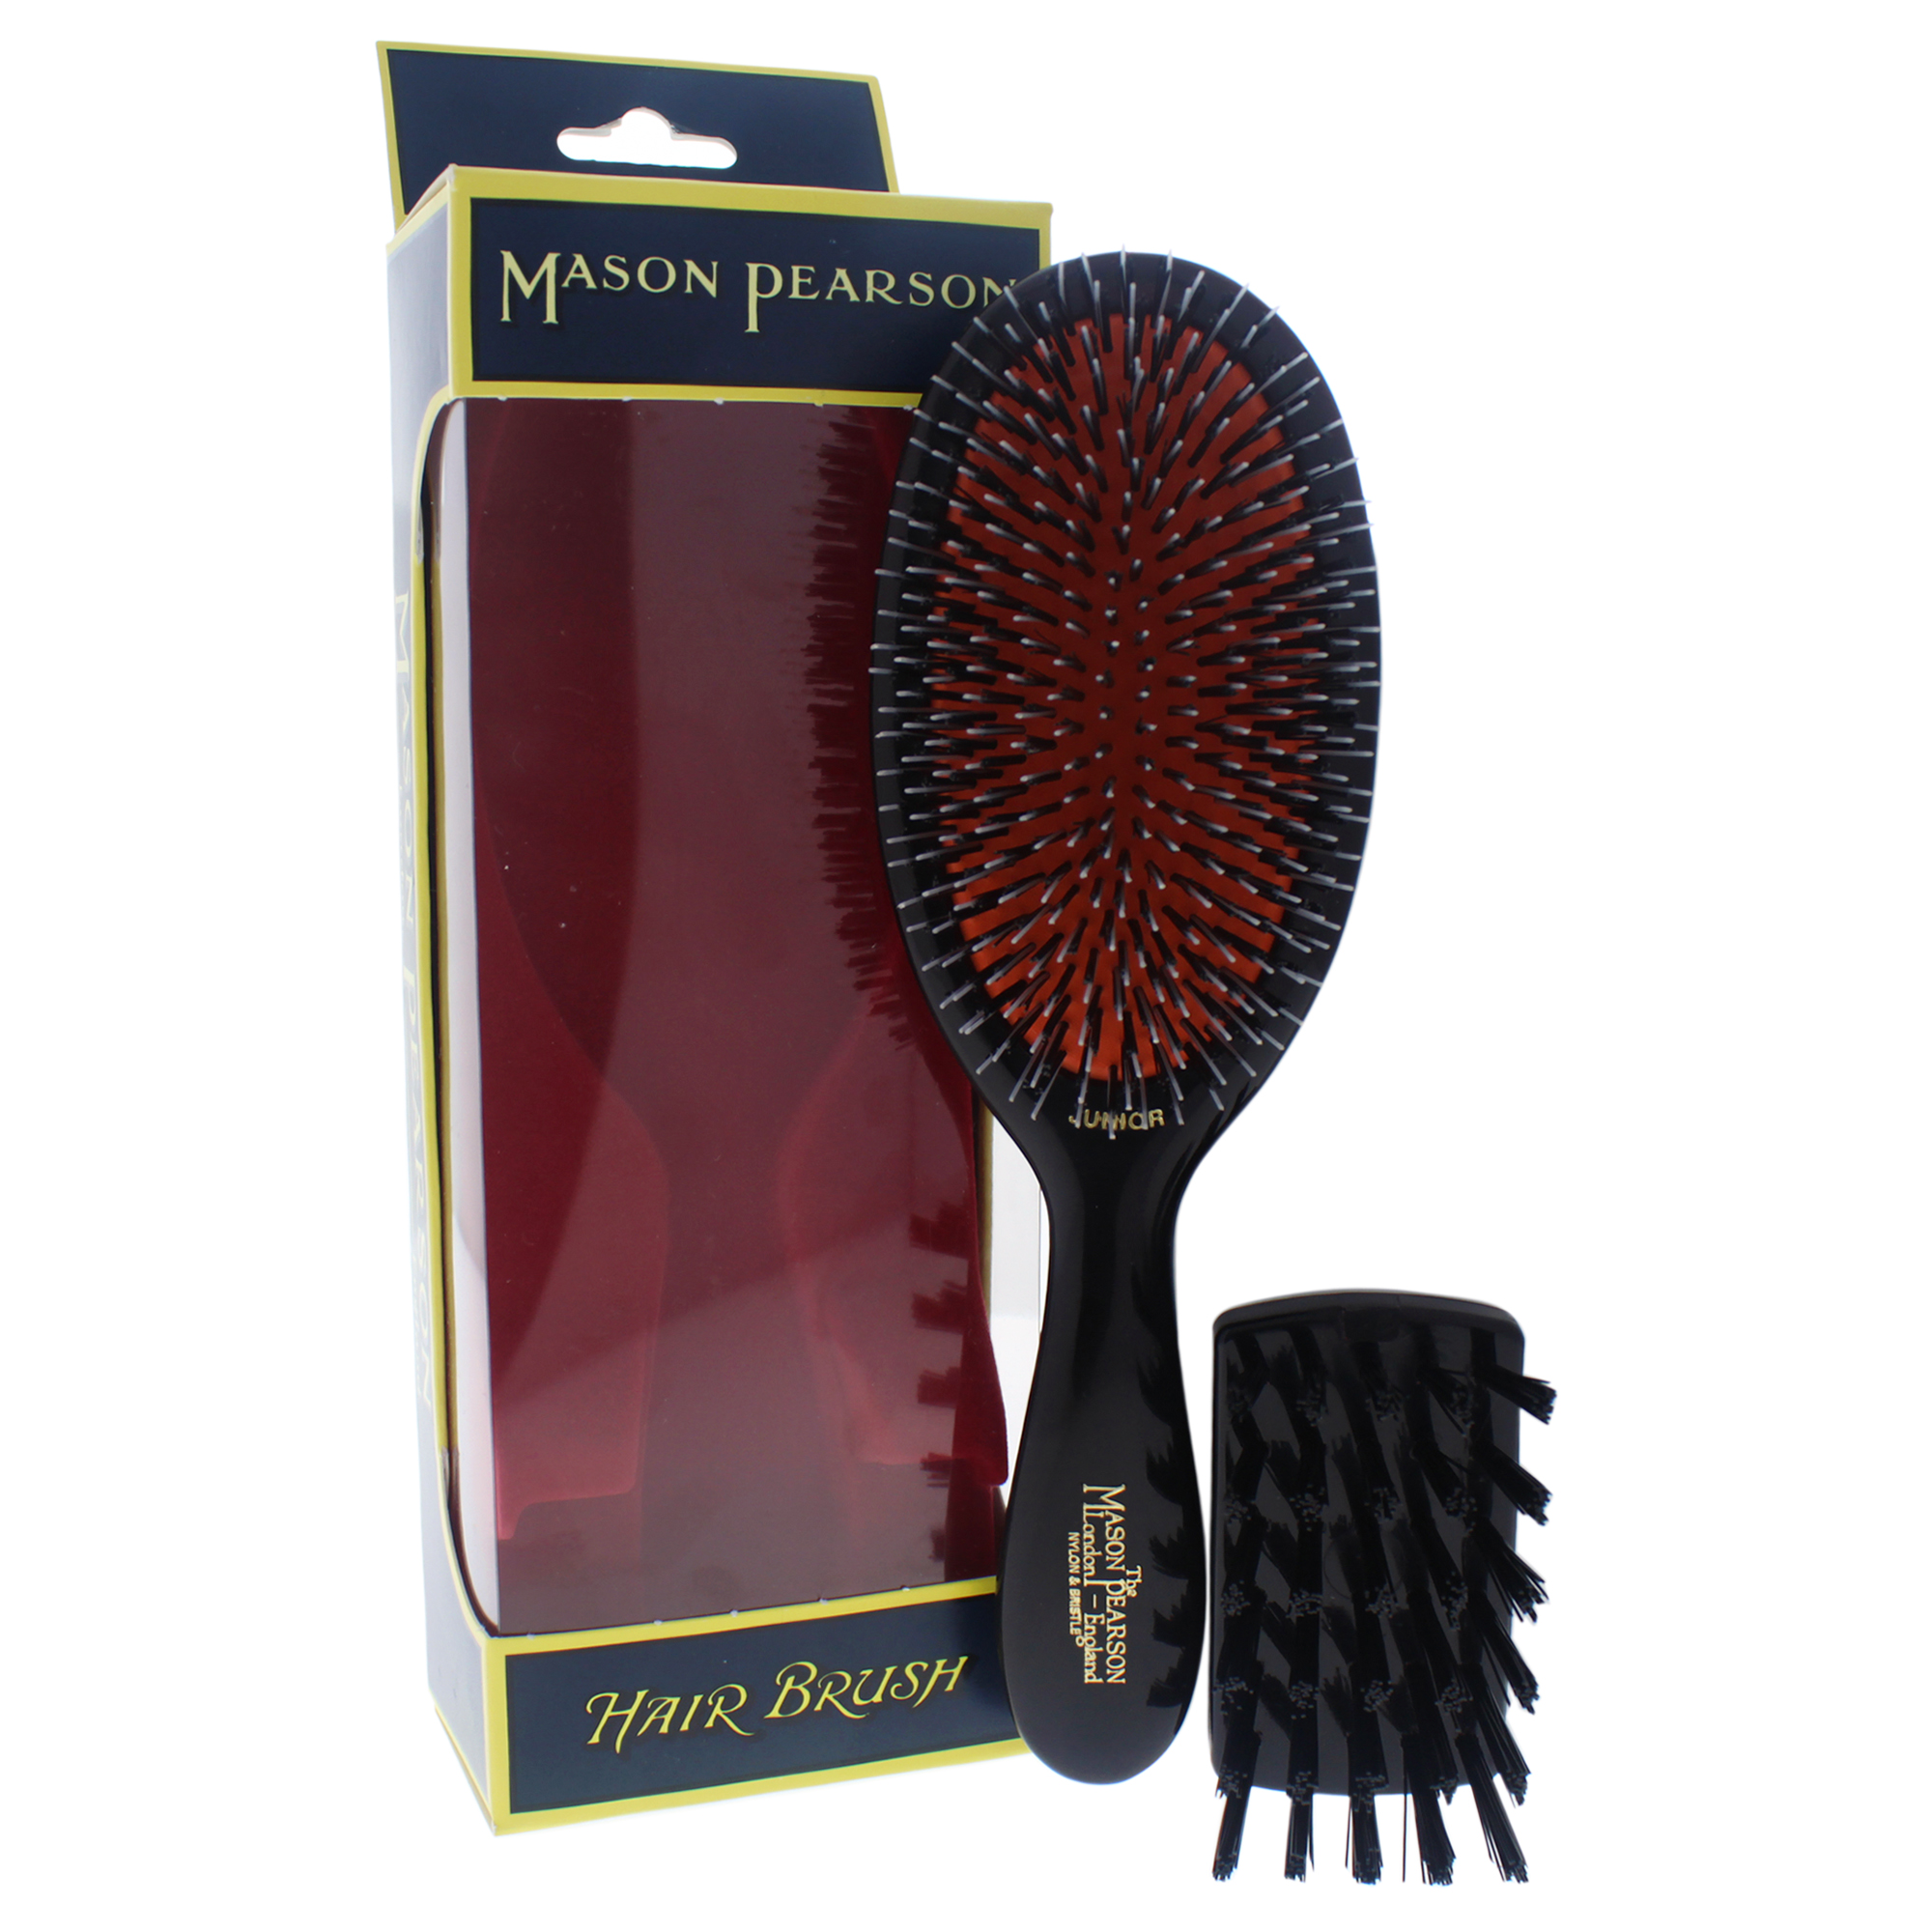 Mason Pearson Hair Brush & Cleaning Brush